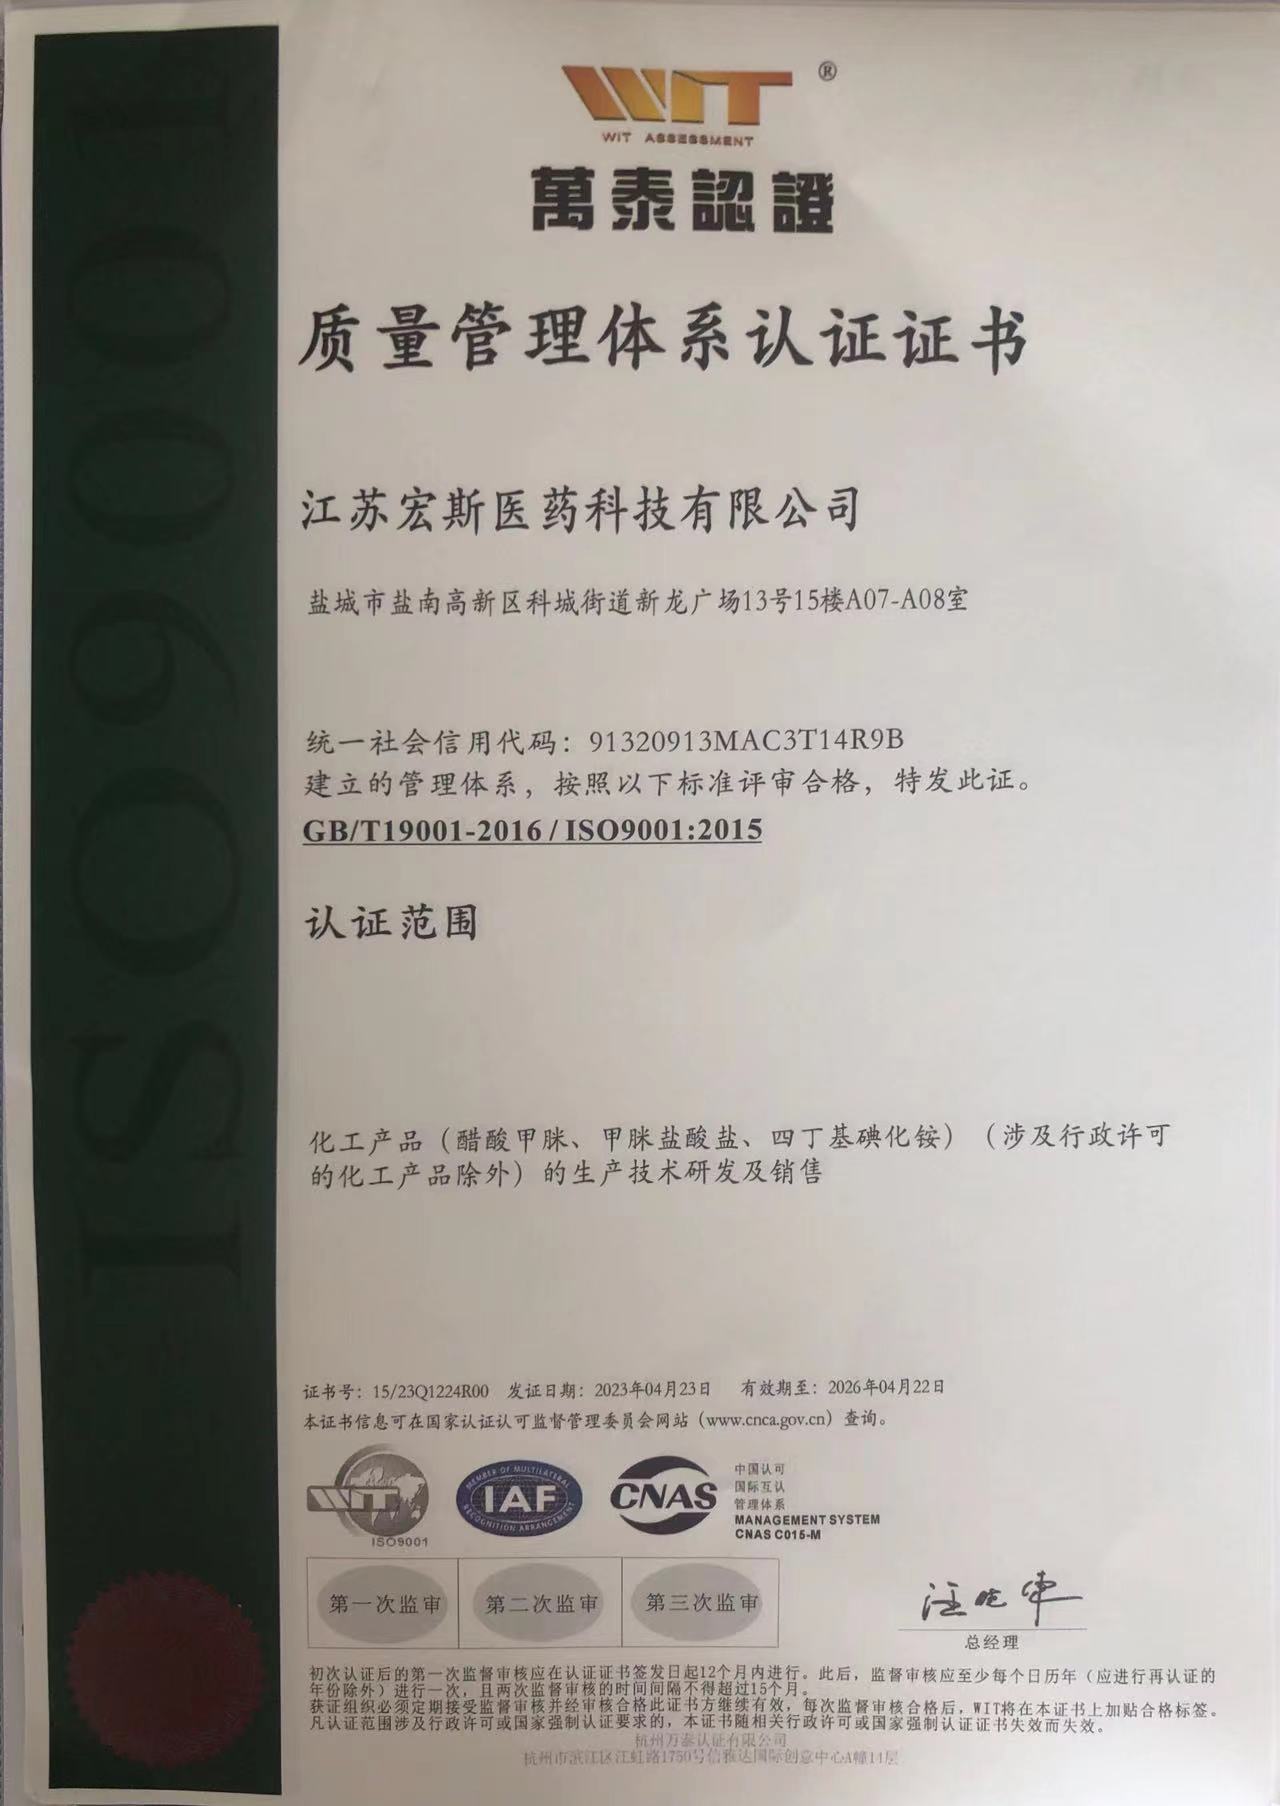 Fa'amanatu ma le māfana Jiangsu Hongsi Medical Technology Co., Ltd. fa'amanuiaina le ISO9001:2015 fa'ava-o-malo fa'ailoga faiga fa'apitoa.